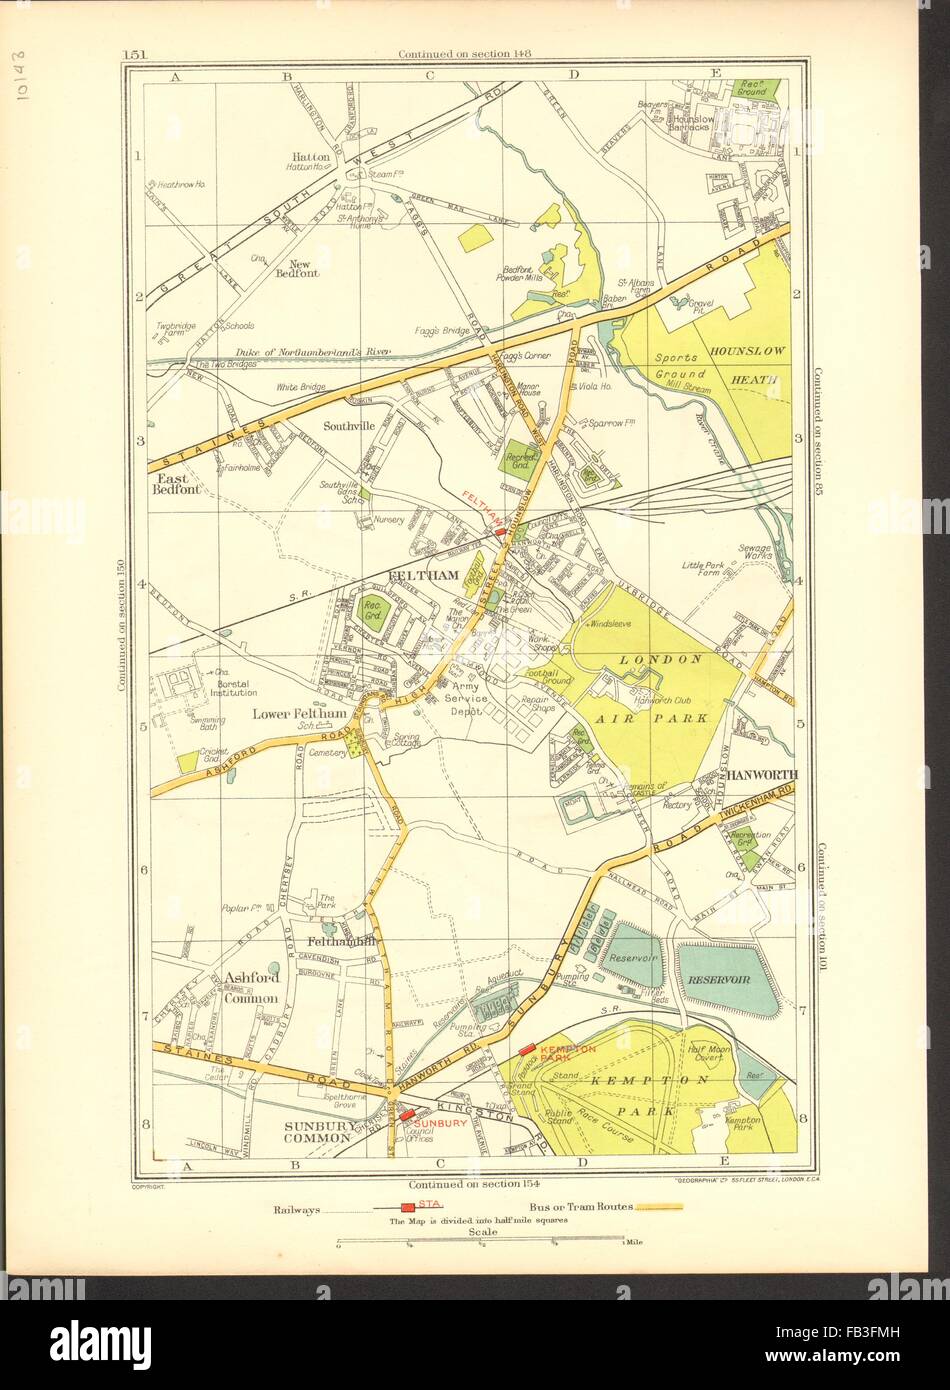 FELTHAM : Hounslow, Hatton, commune de Sunbury, Hanworth, Ashford, 1937 commun site Banque D'Images